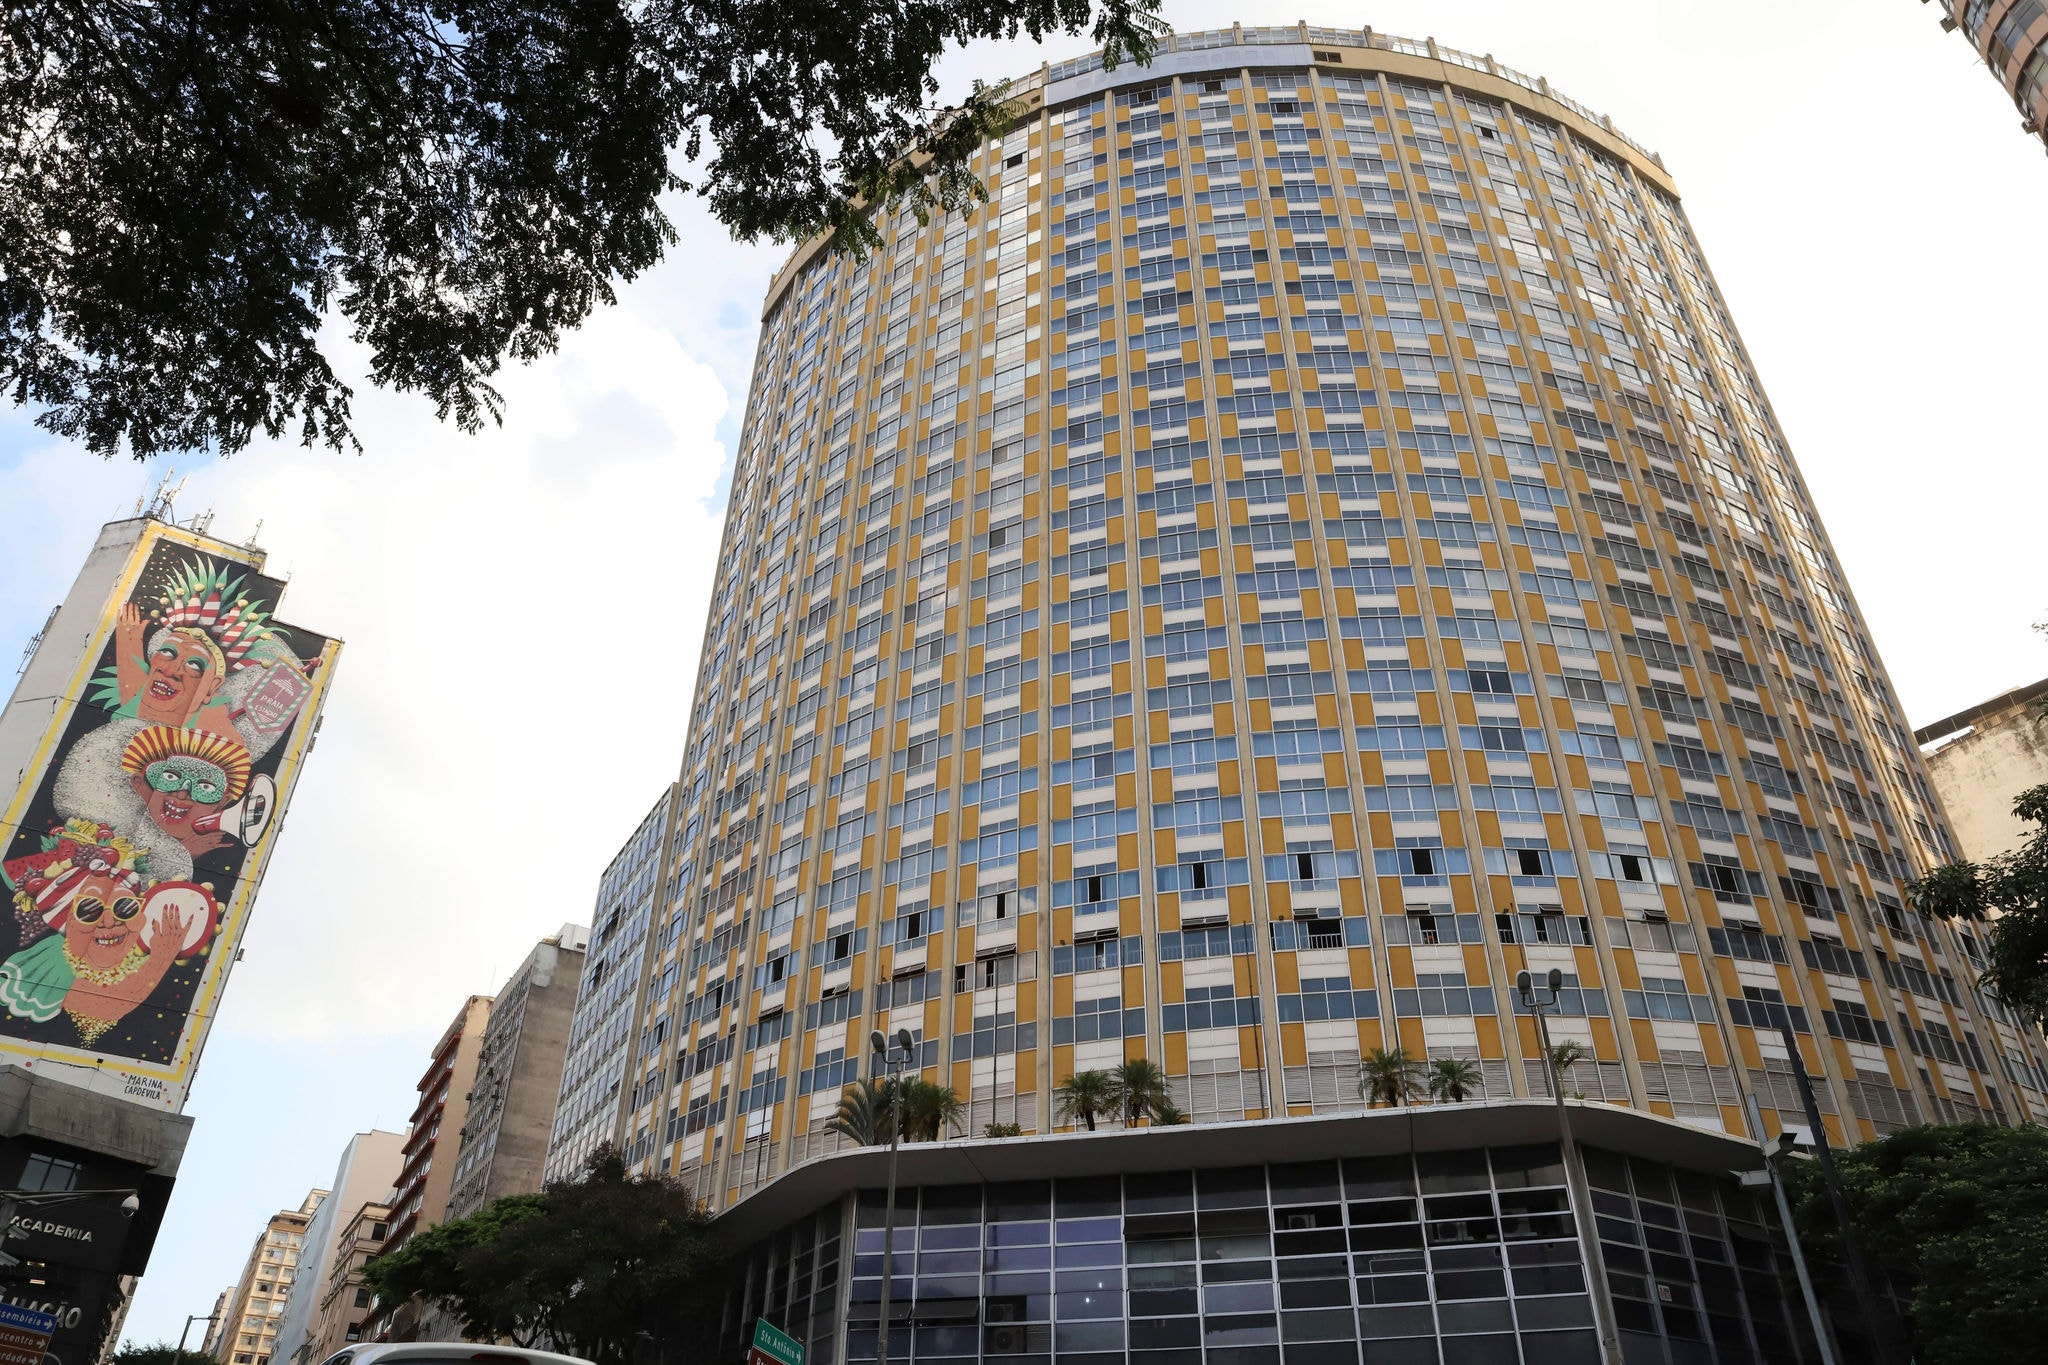 Tradicional hotel de Belo Horizonte está fechado há seis meses e sem perspectiva de nova ocupação